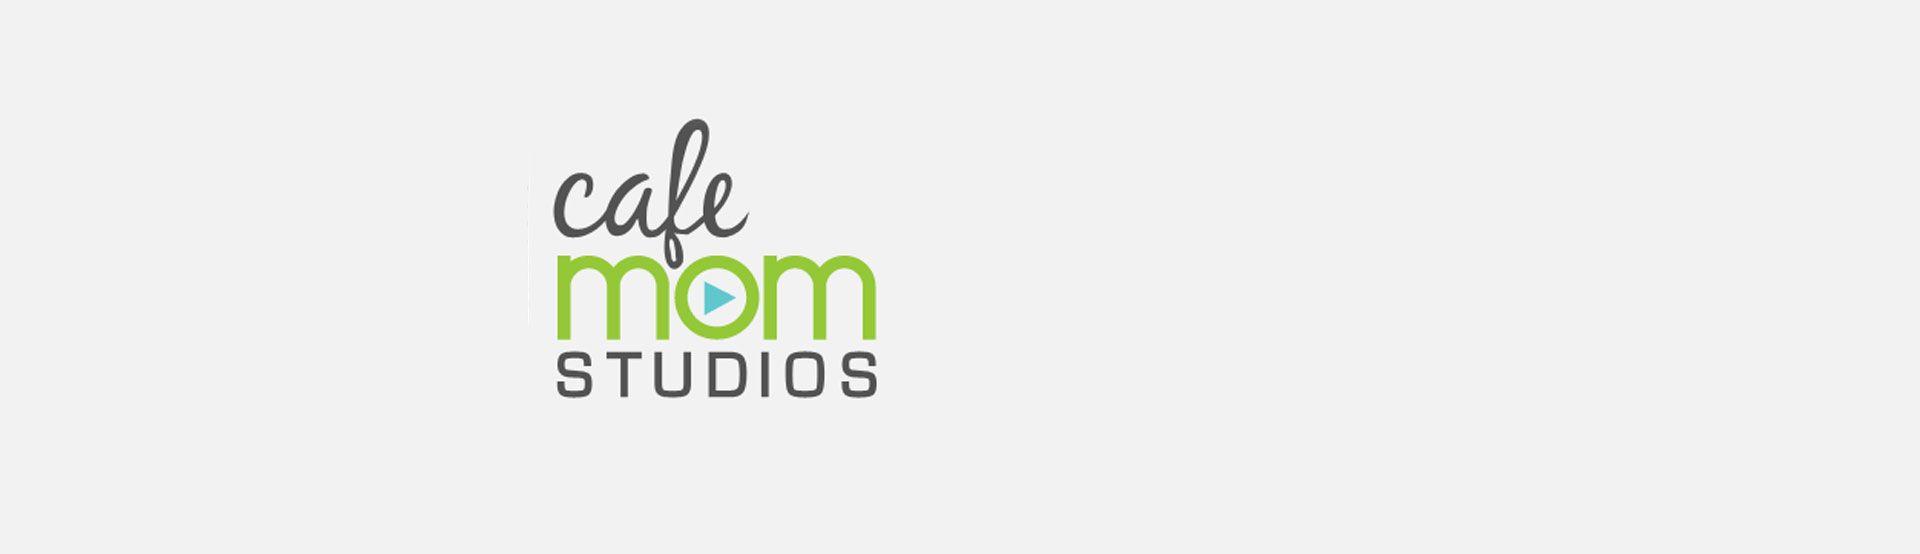 CafeMom Logo - Producer: Cafe Mom Studios